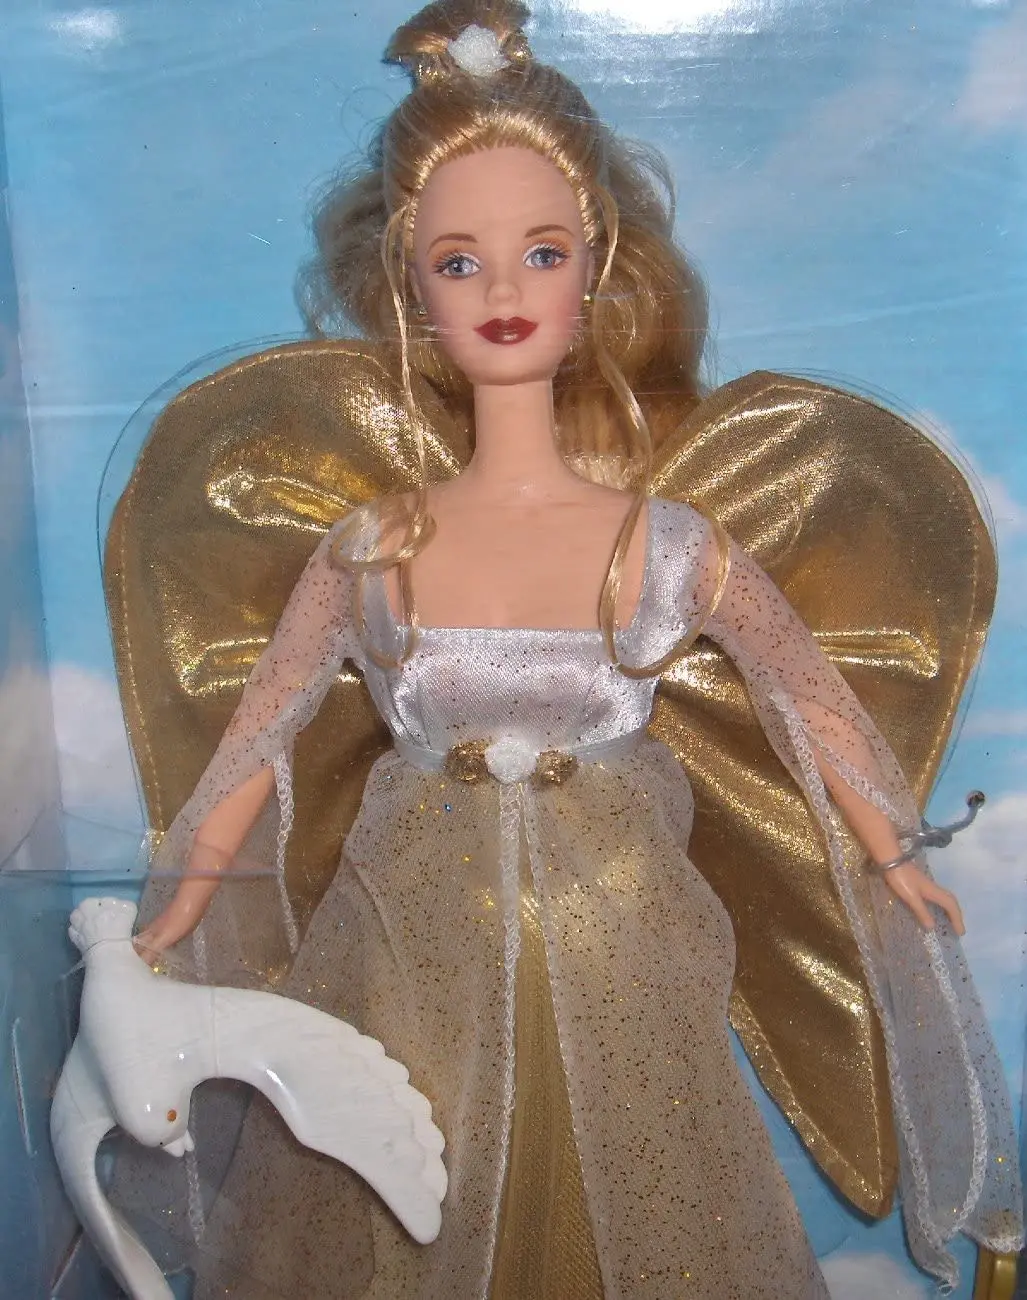 Angelic barbie